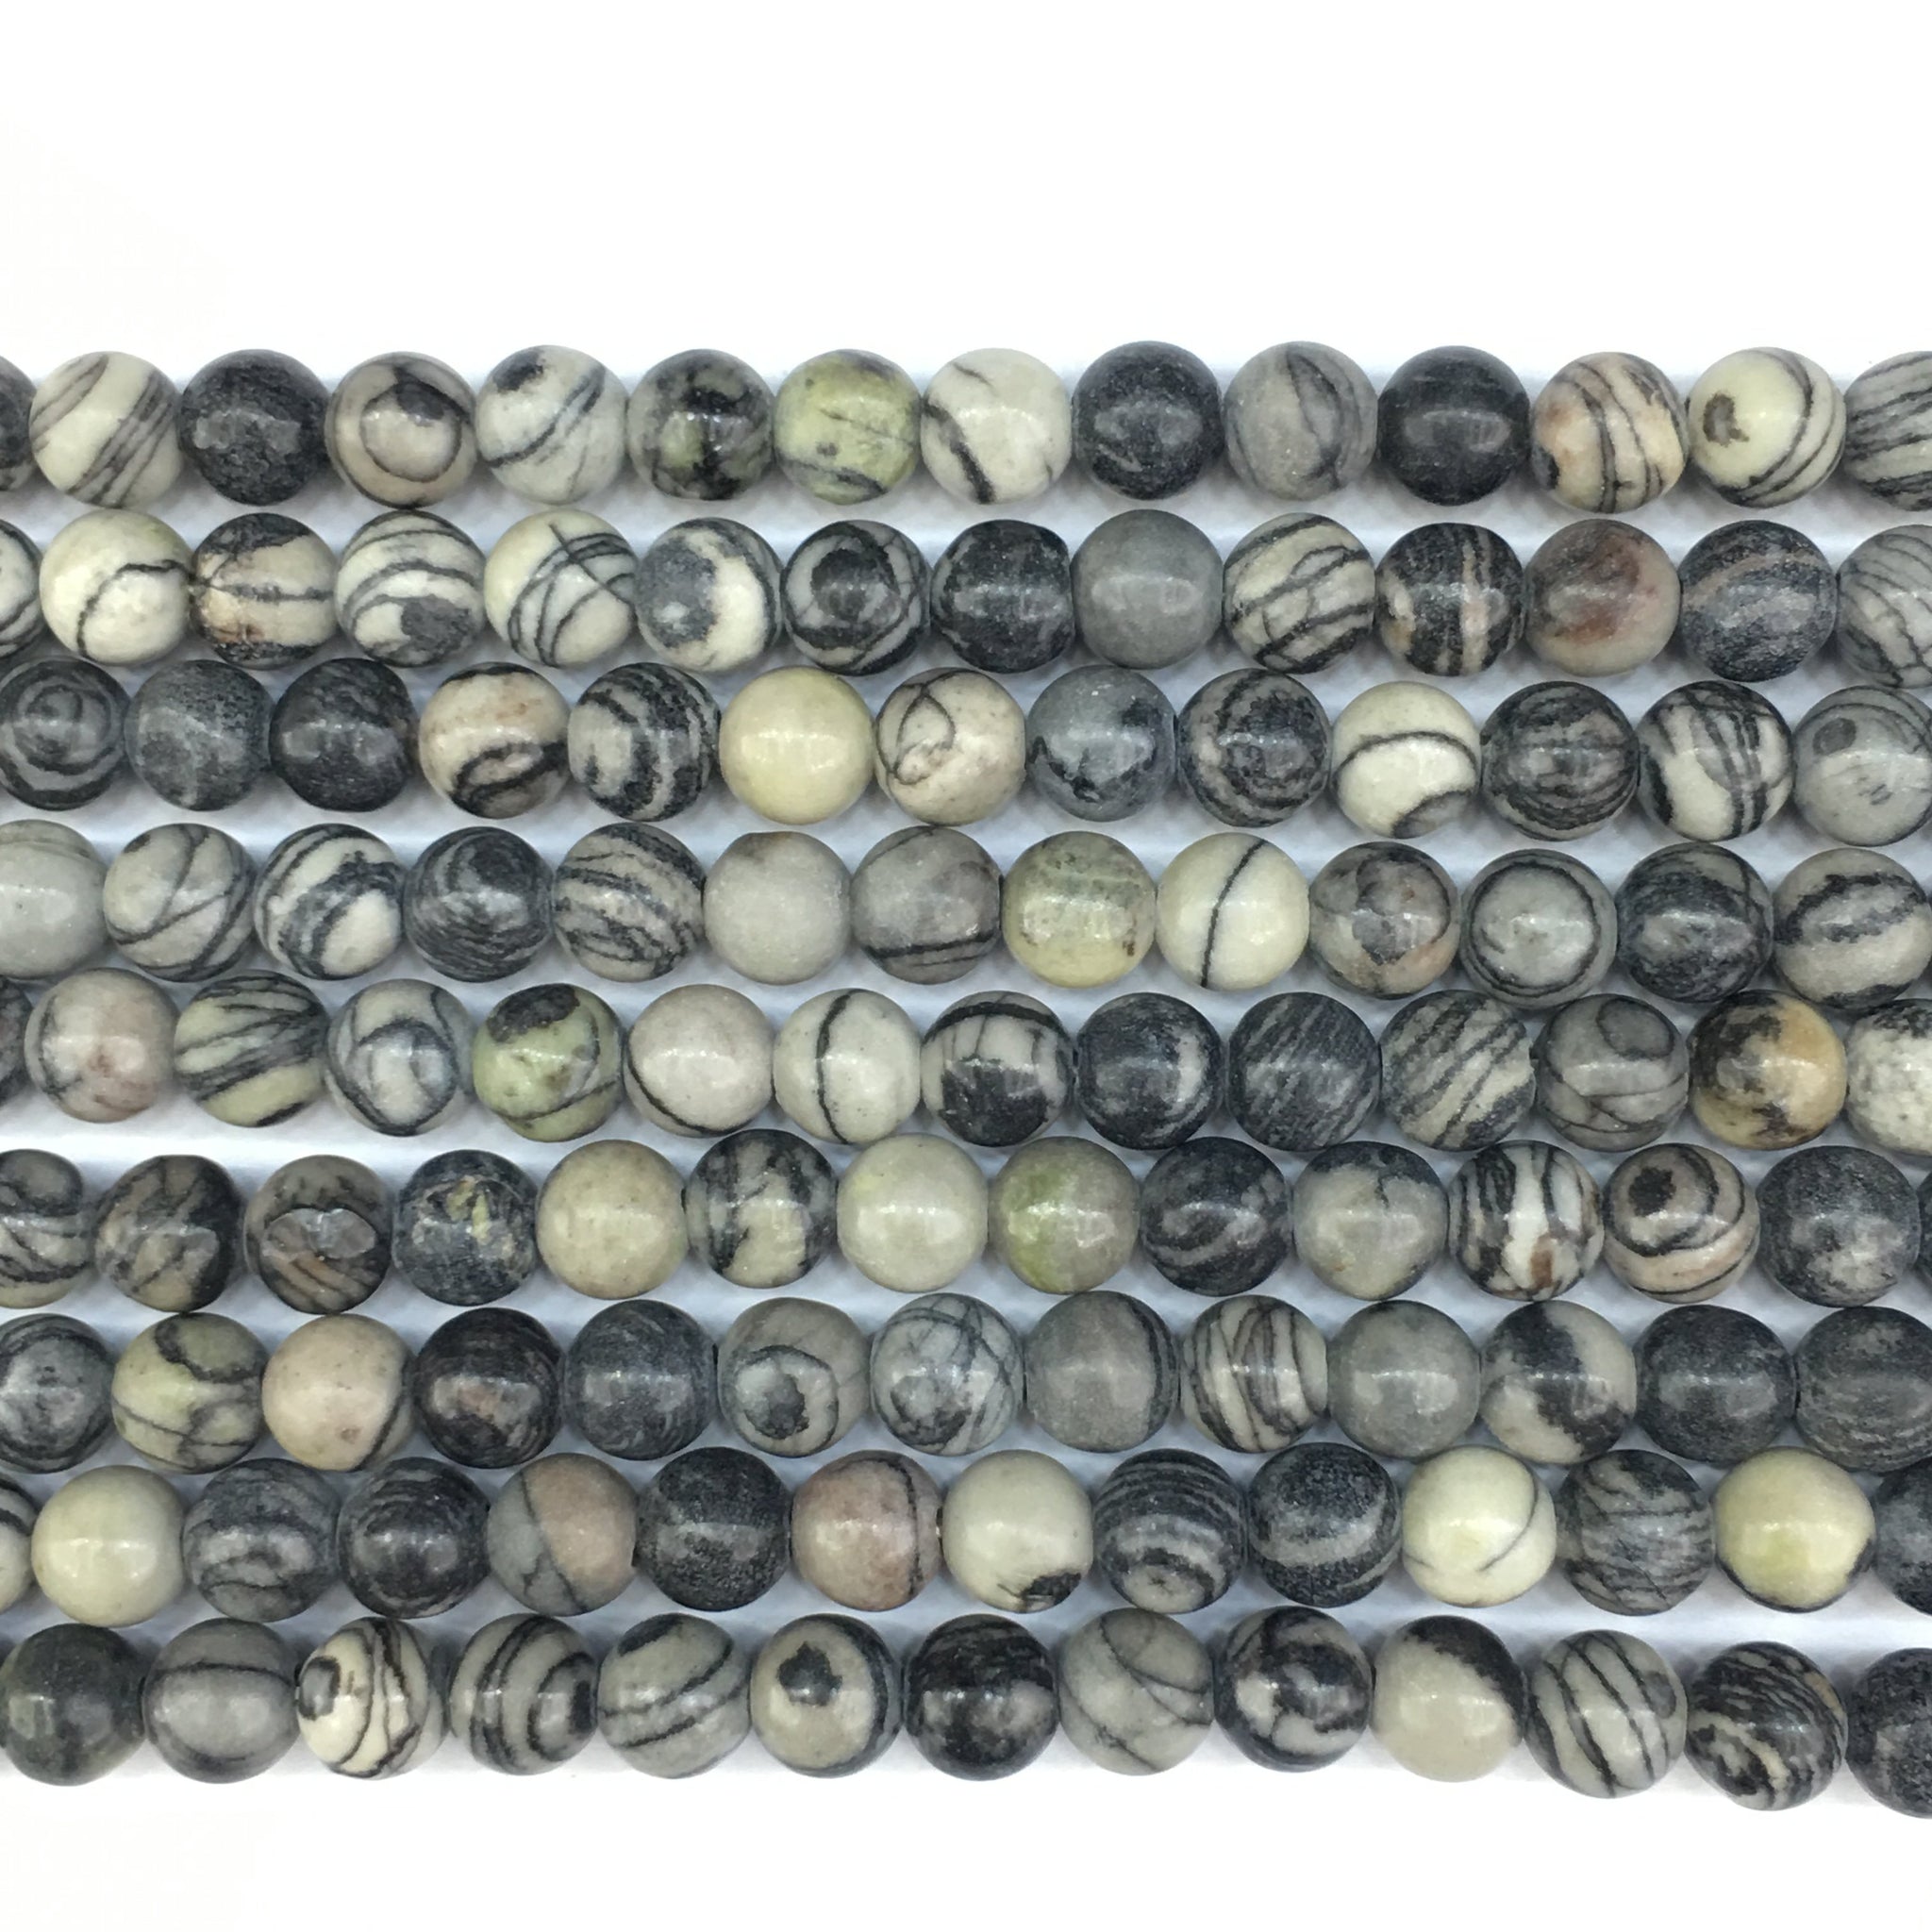 Black Round Beads - 8mm